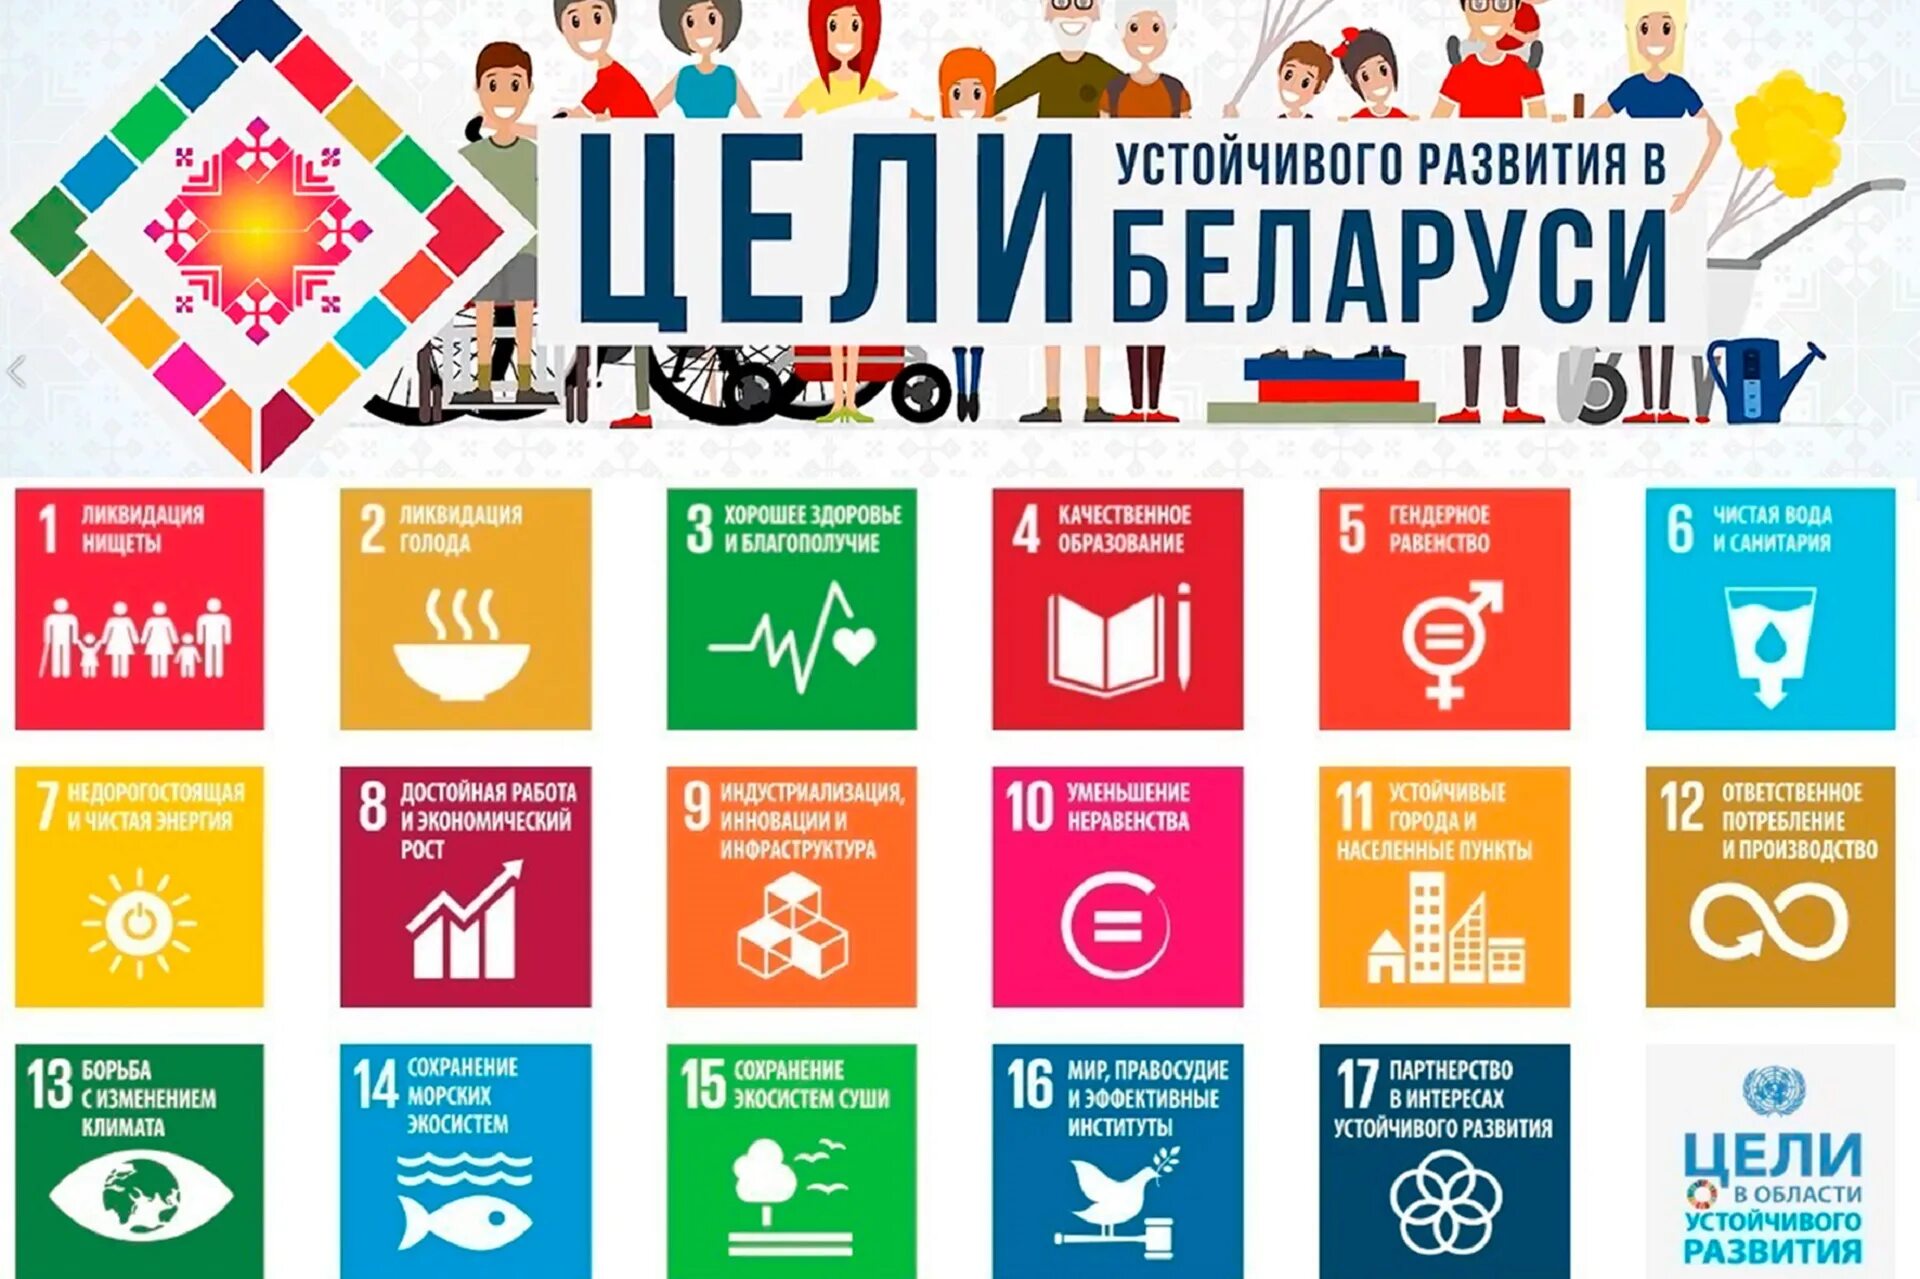 17 Целей устойчивого развития ООН. Цели устойчивого развития ООН 2015-2030. Цели устойчивого развития на период до 2030 года Беларусь. Цели устойчивого развития ООН до 2030. Цели оон 2015